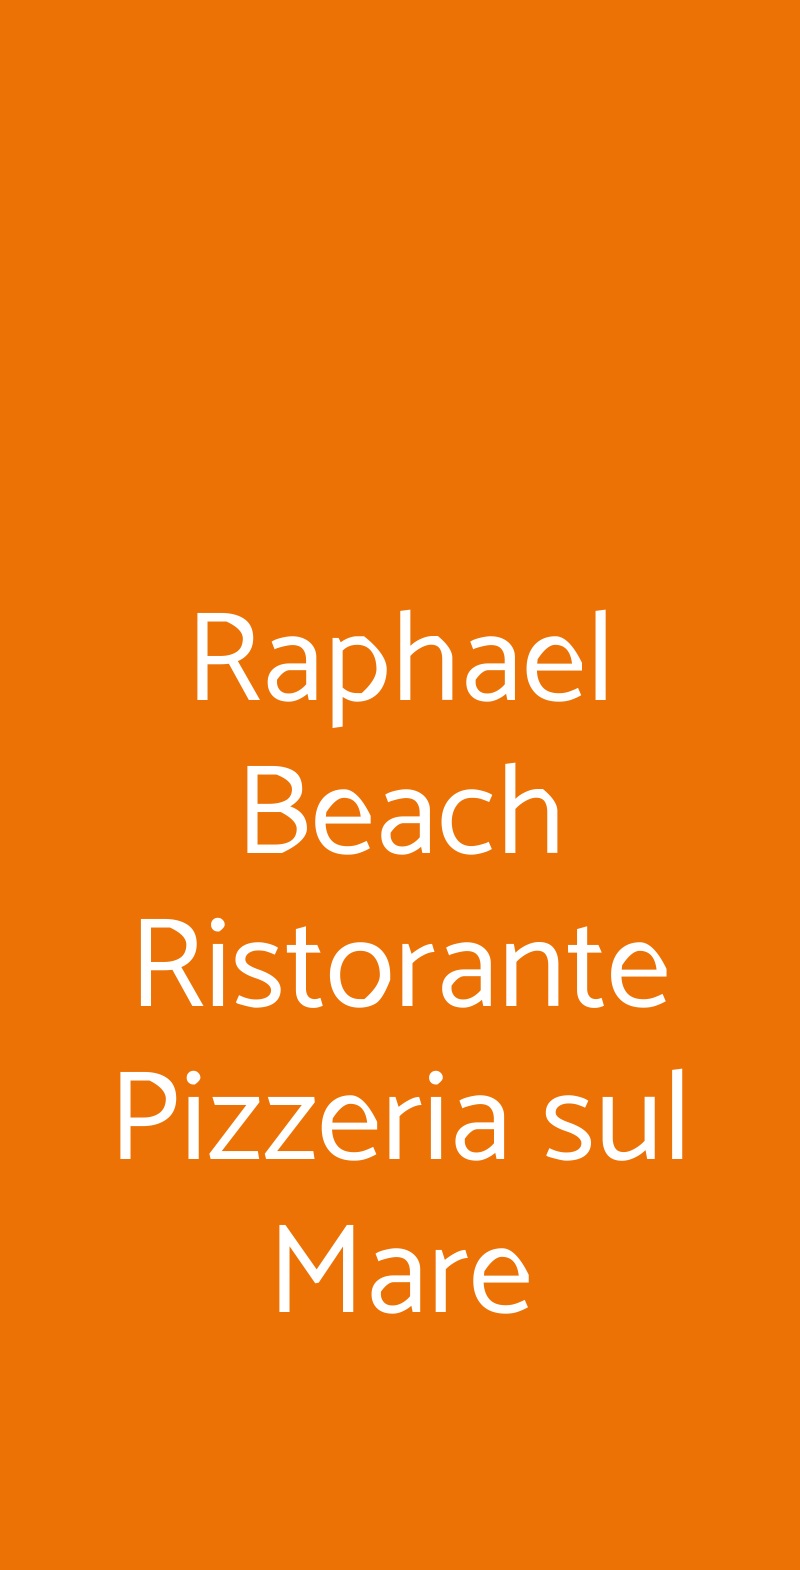 Raphael Beach Ristorante Pizzeria sul Mare Civitanova Marche menù 1 pagina